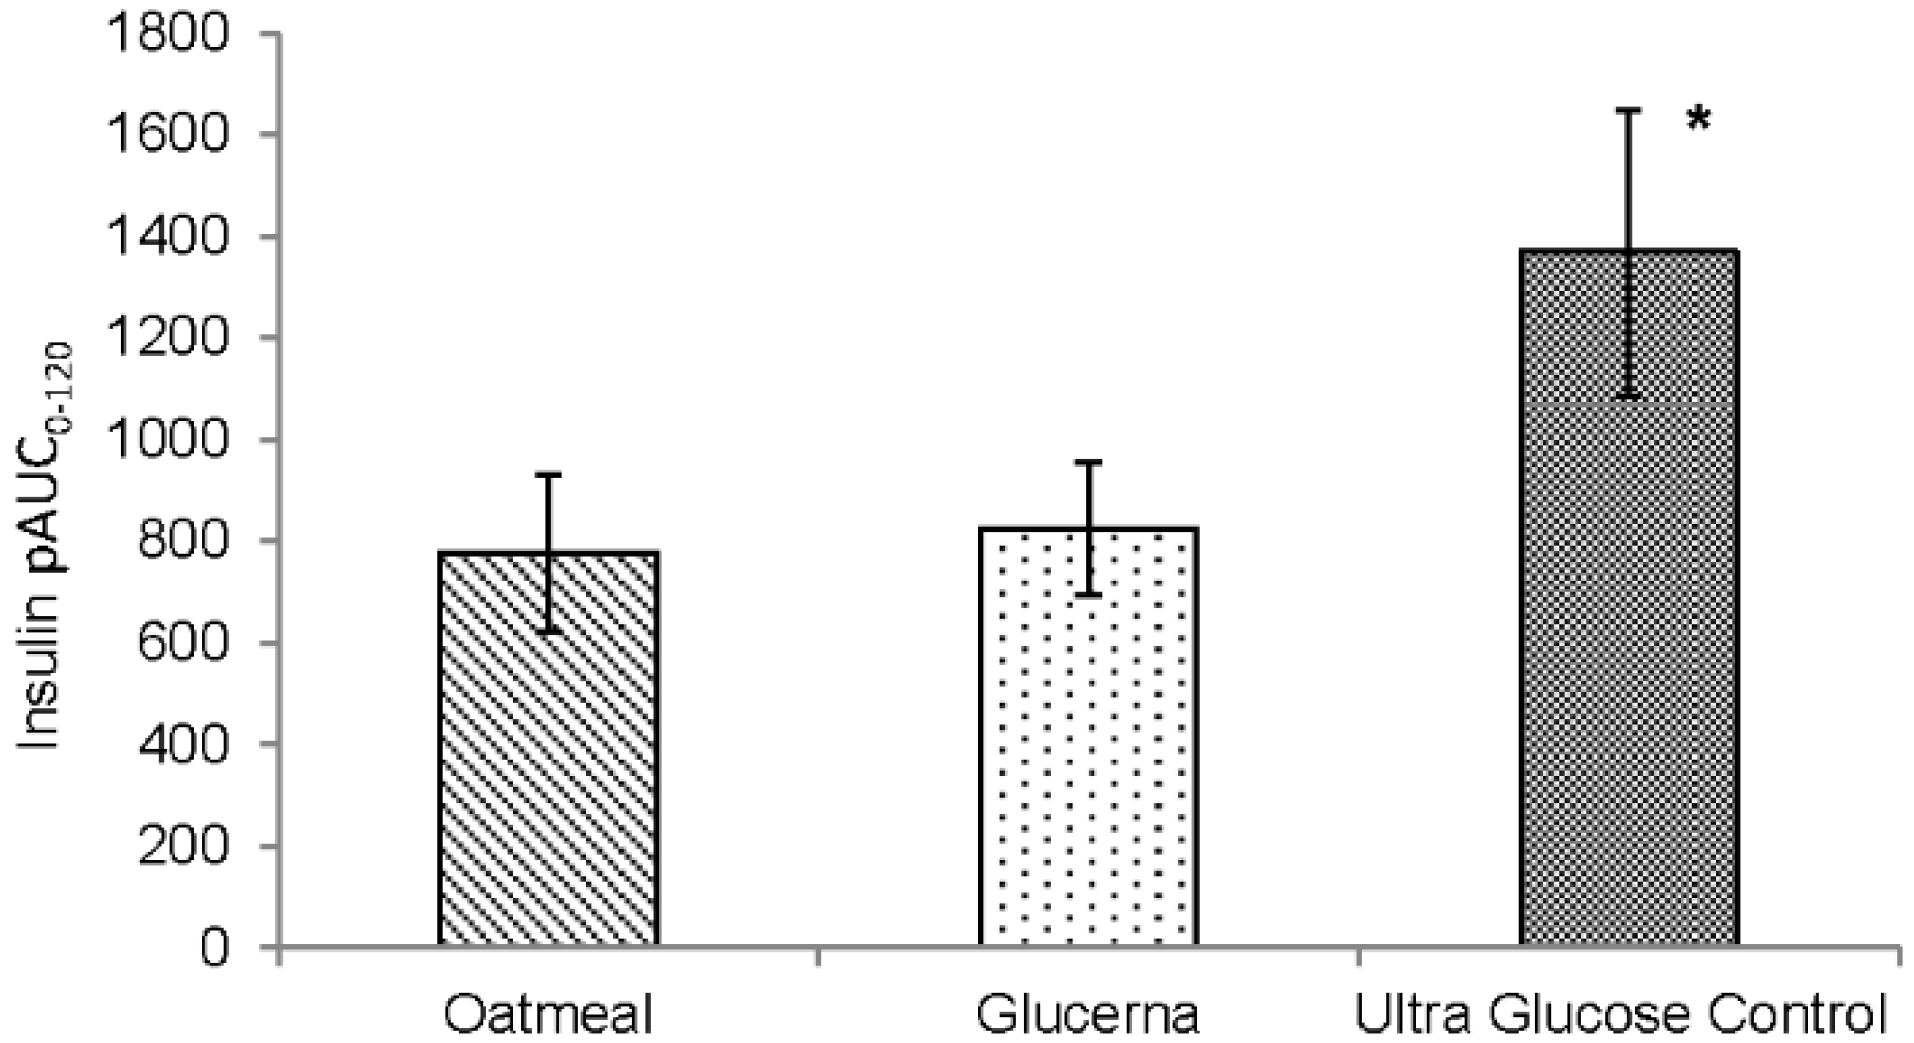 Ultra Glucose Control®